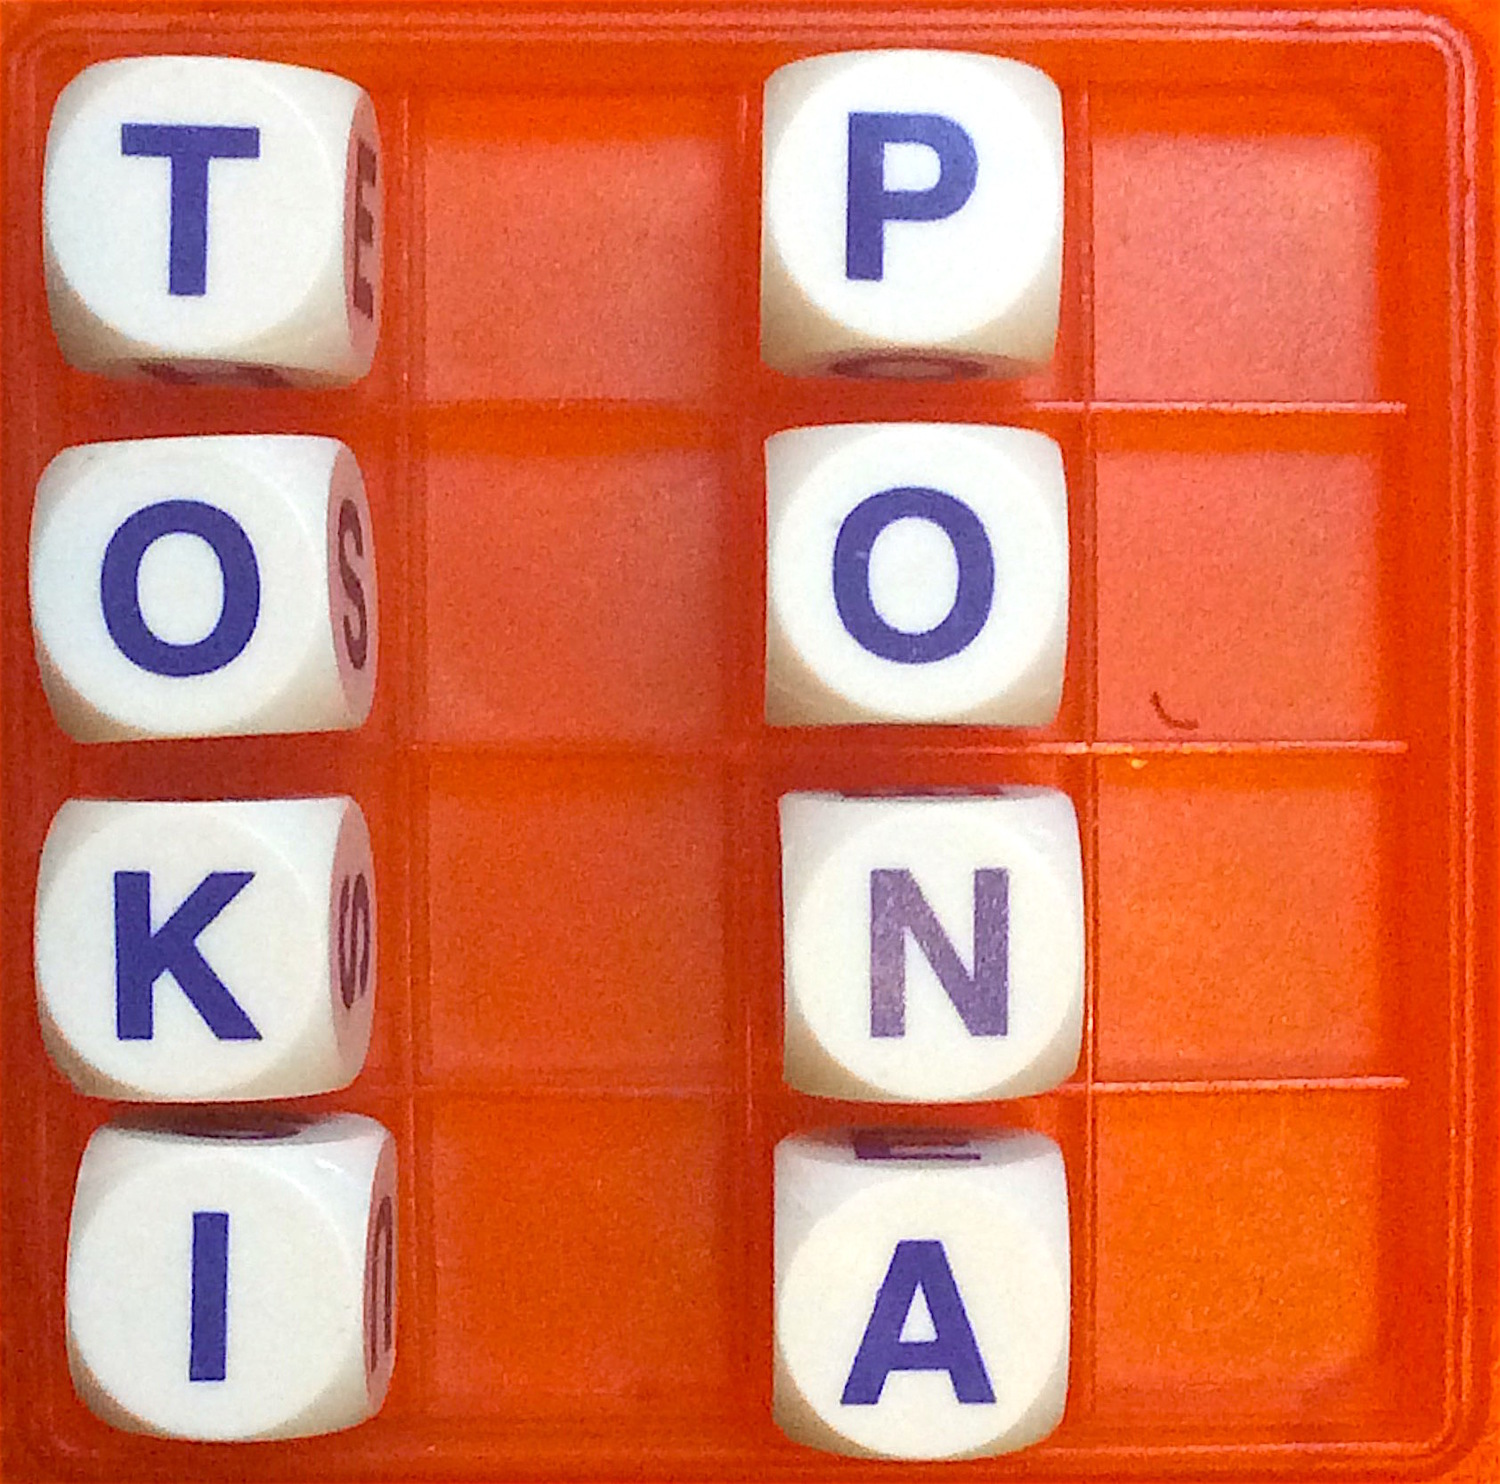 Thumbnail for "25. Toki Pona".